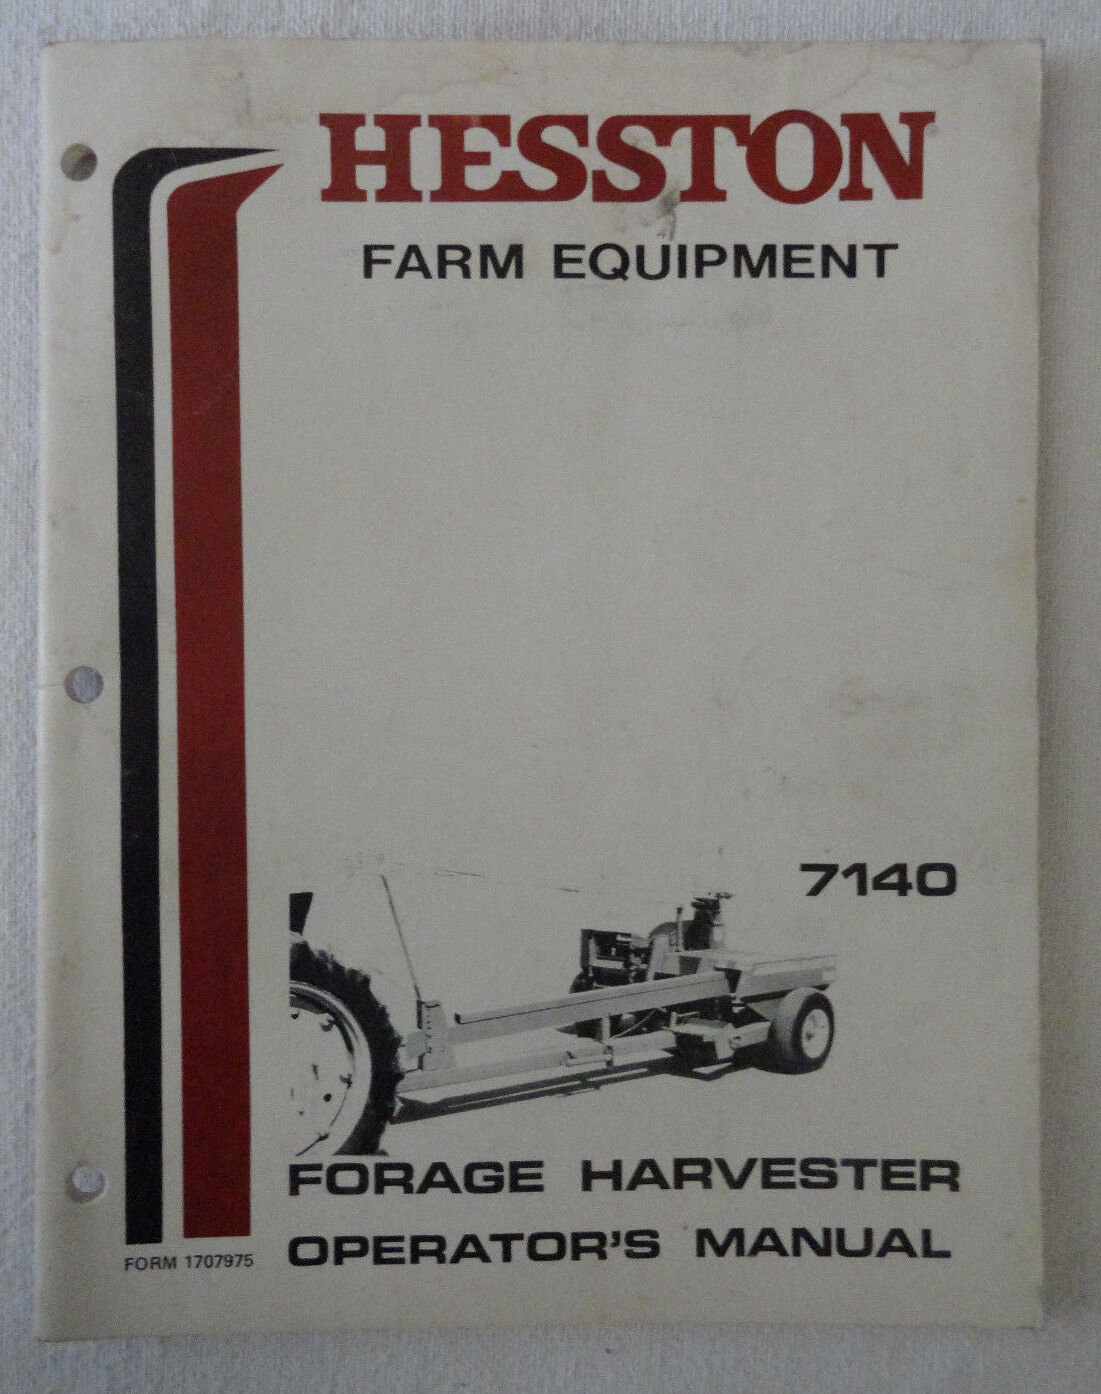 Hesston Farm Equipment 7140 Forage Harvester Operators Manual OEM